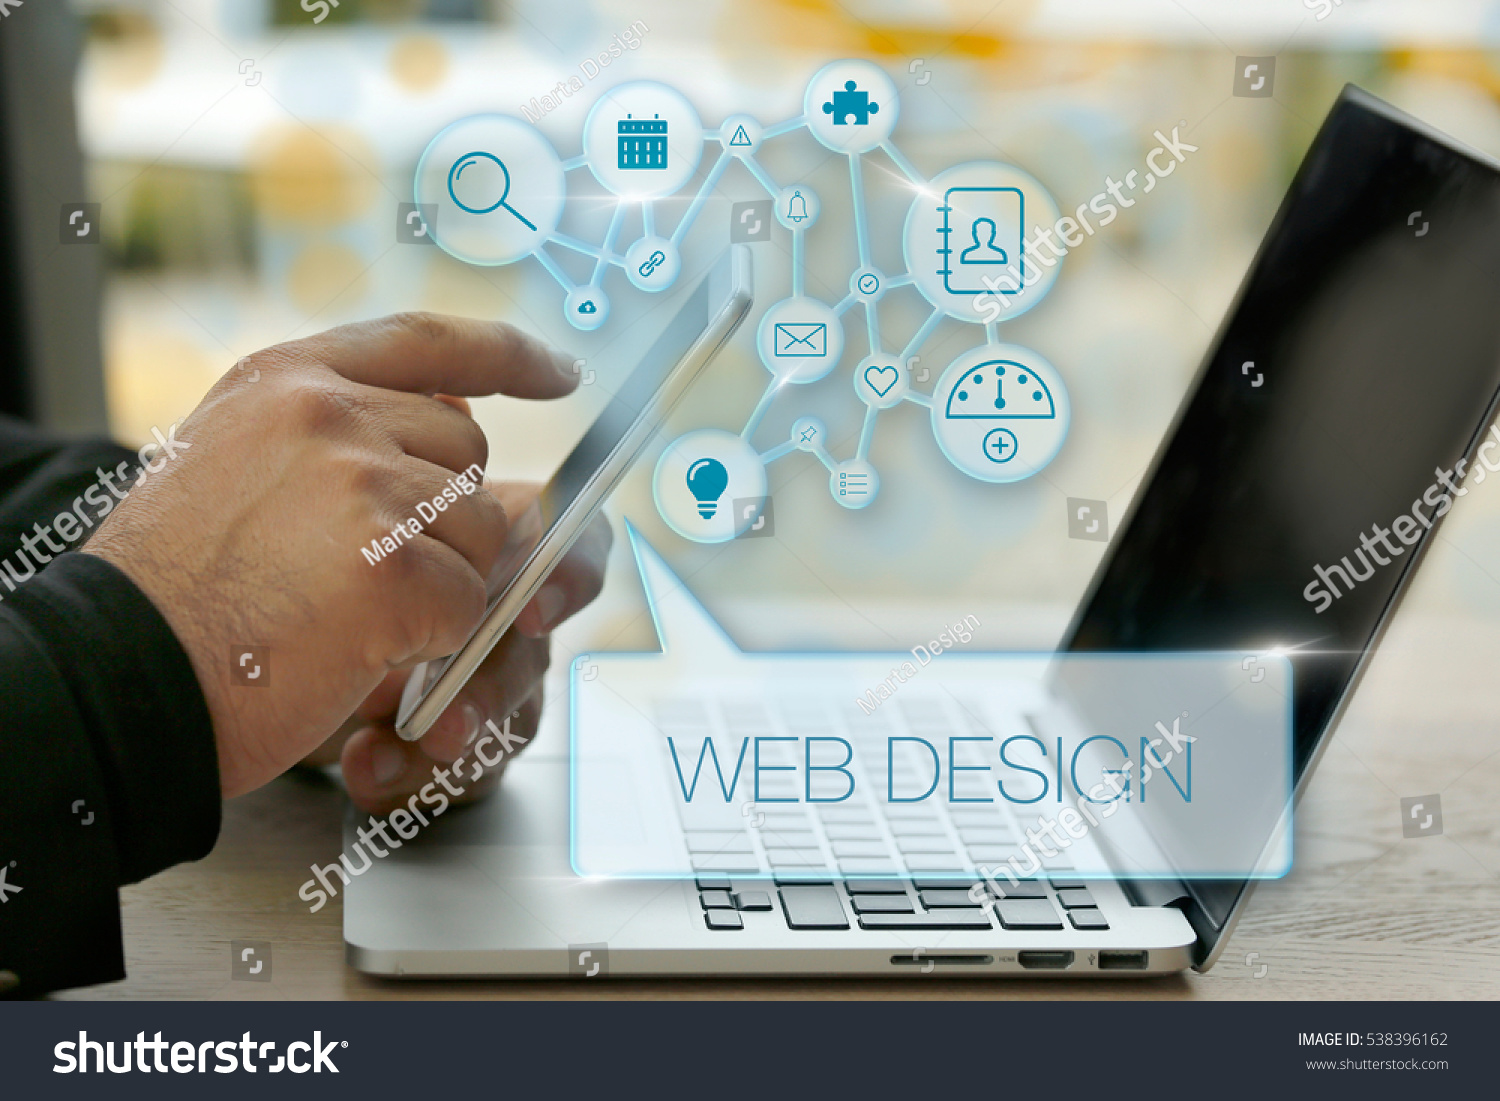 Web Design, Technology Concept #538396162